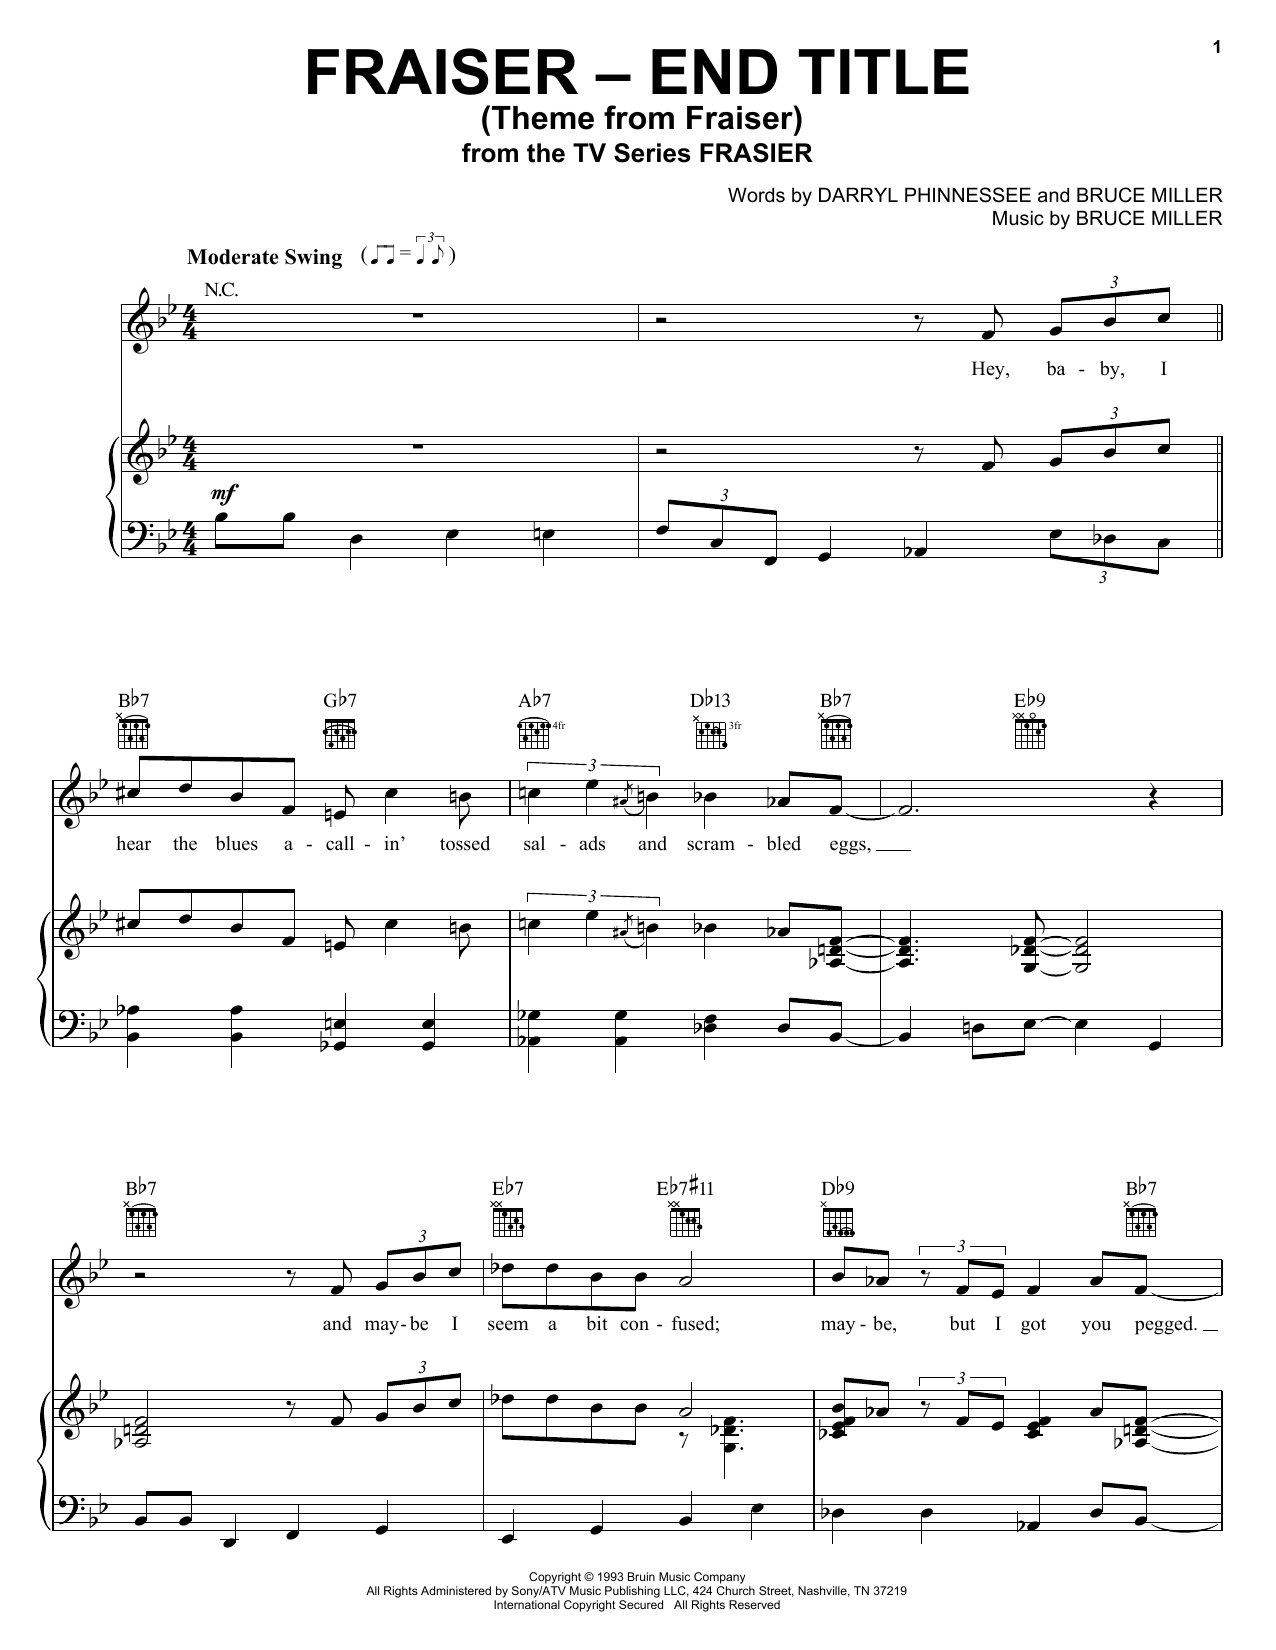 Bruce Miller Theme From Frasier sheet music notes printable PDF score